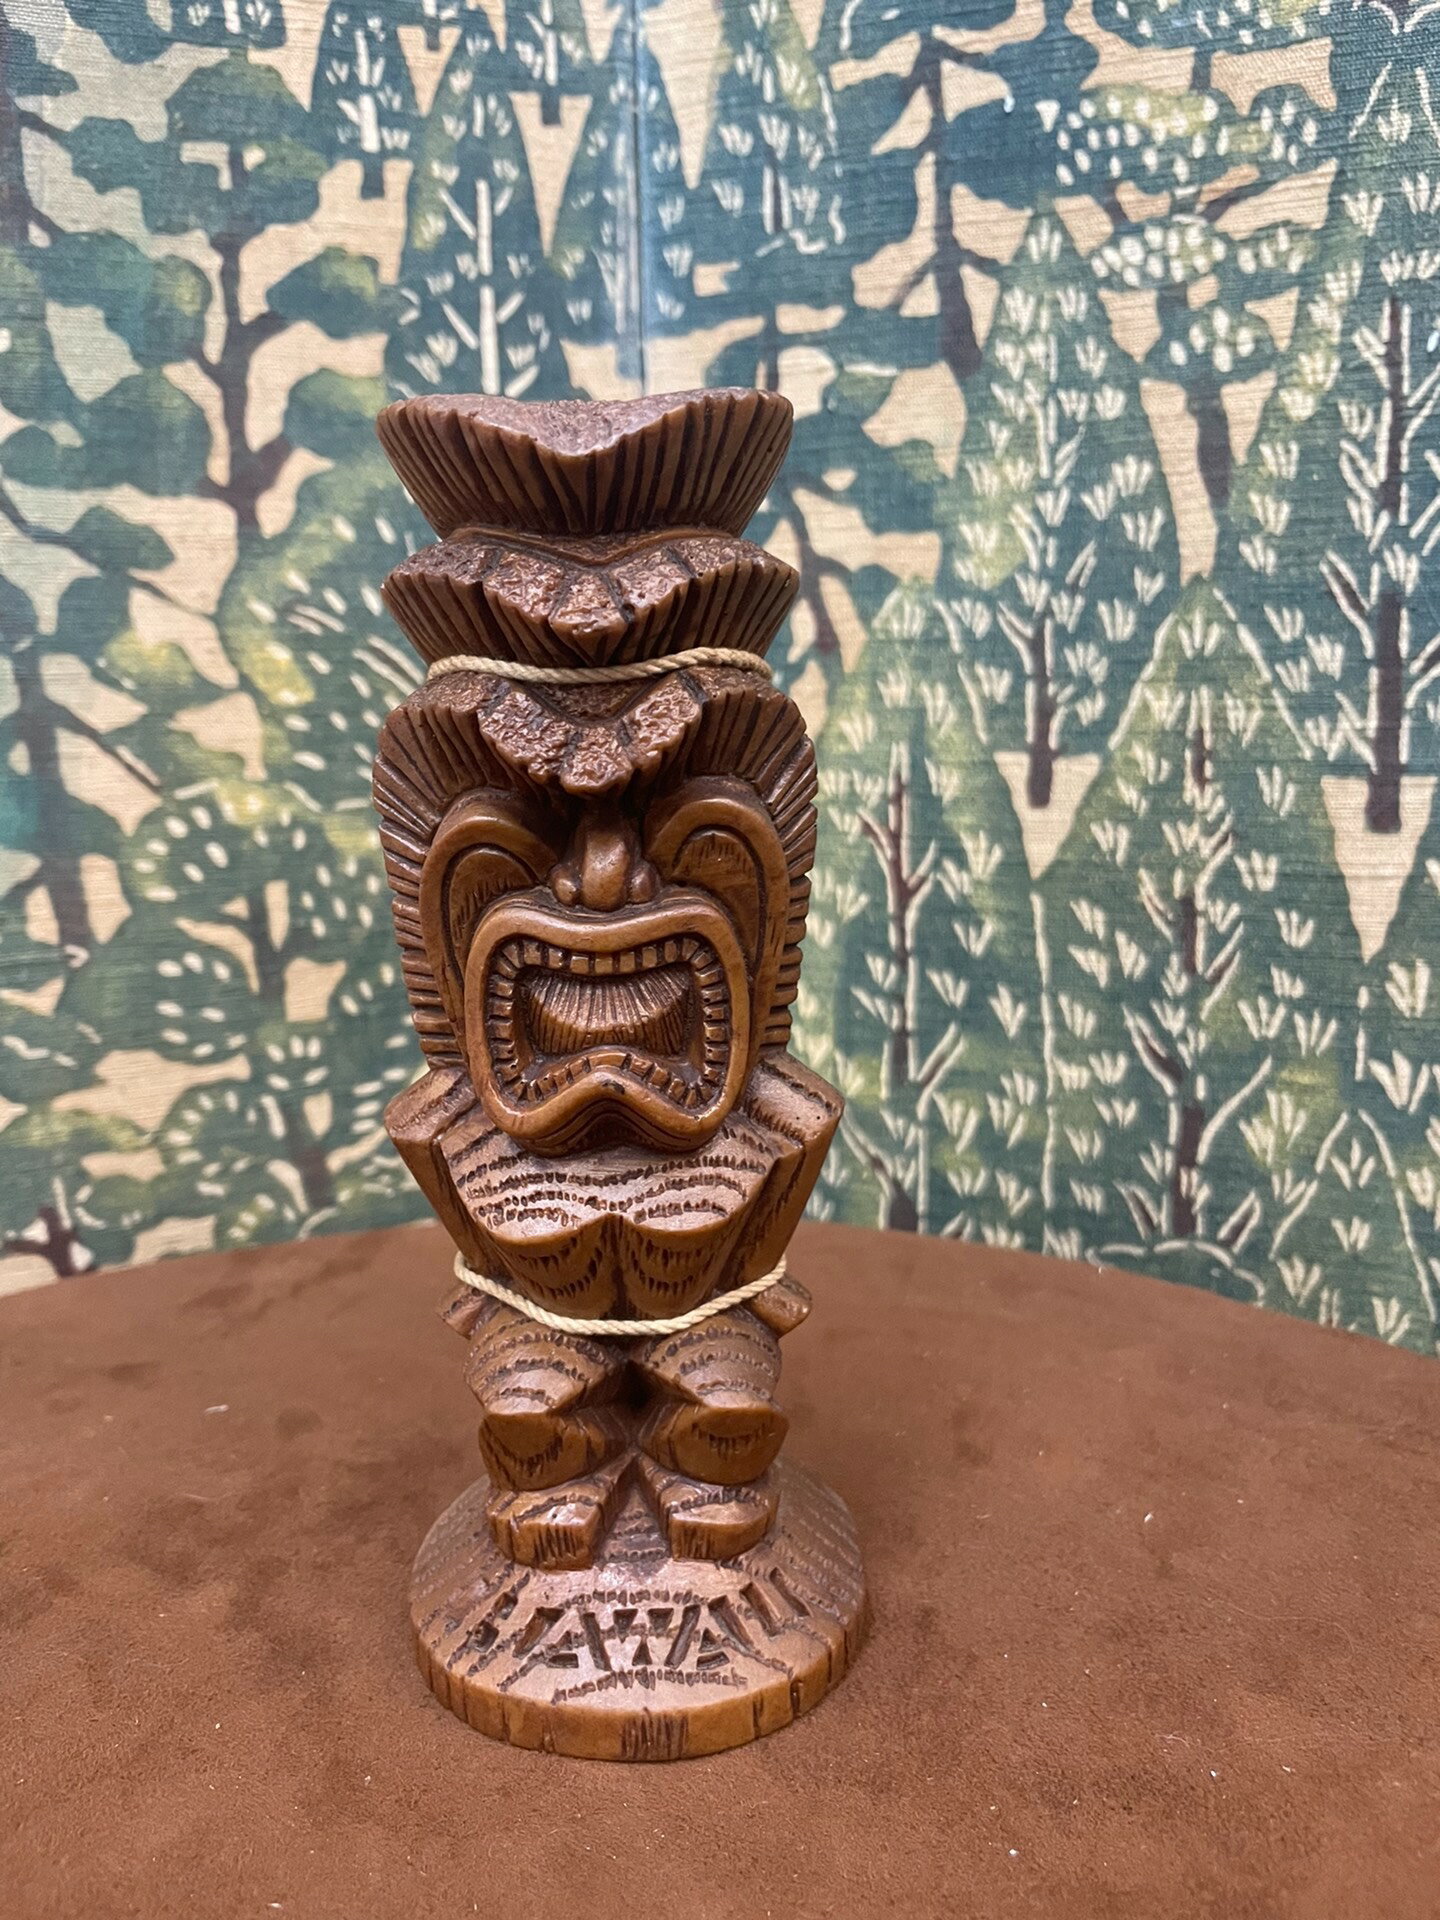 夏威夷中古圖騰高密樹脂置物擺飾1539